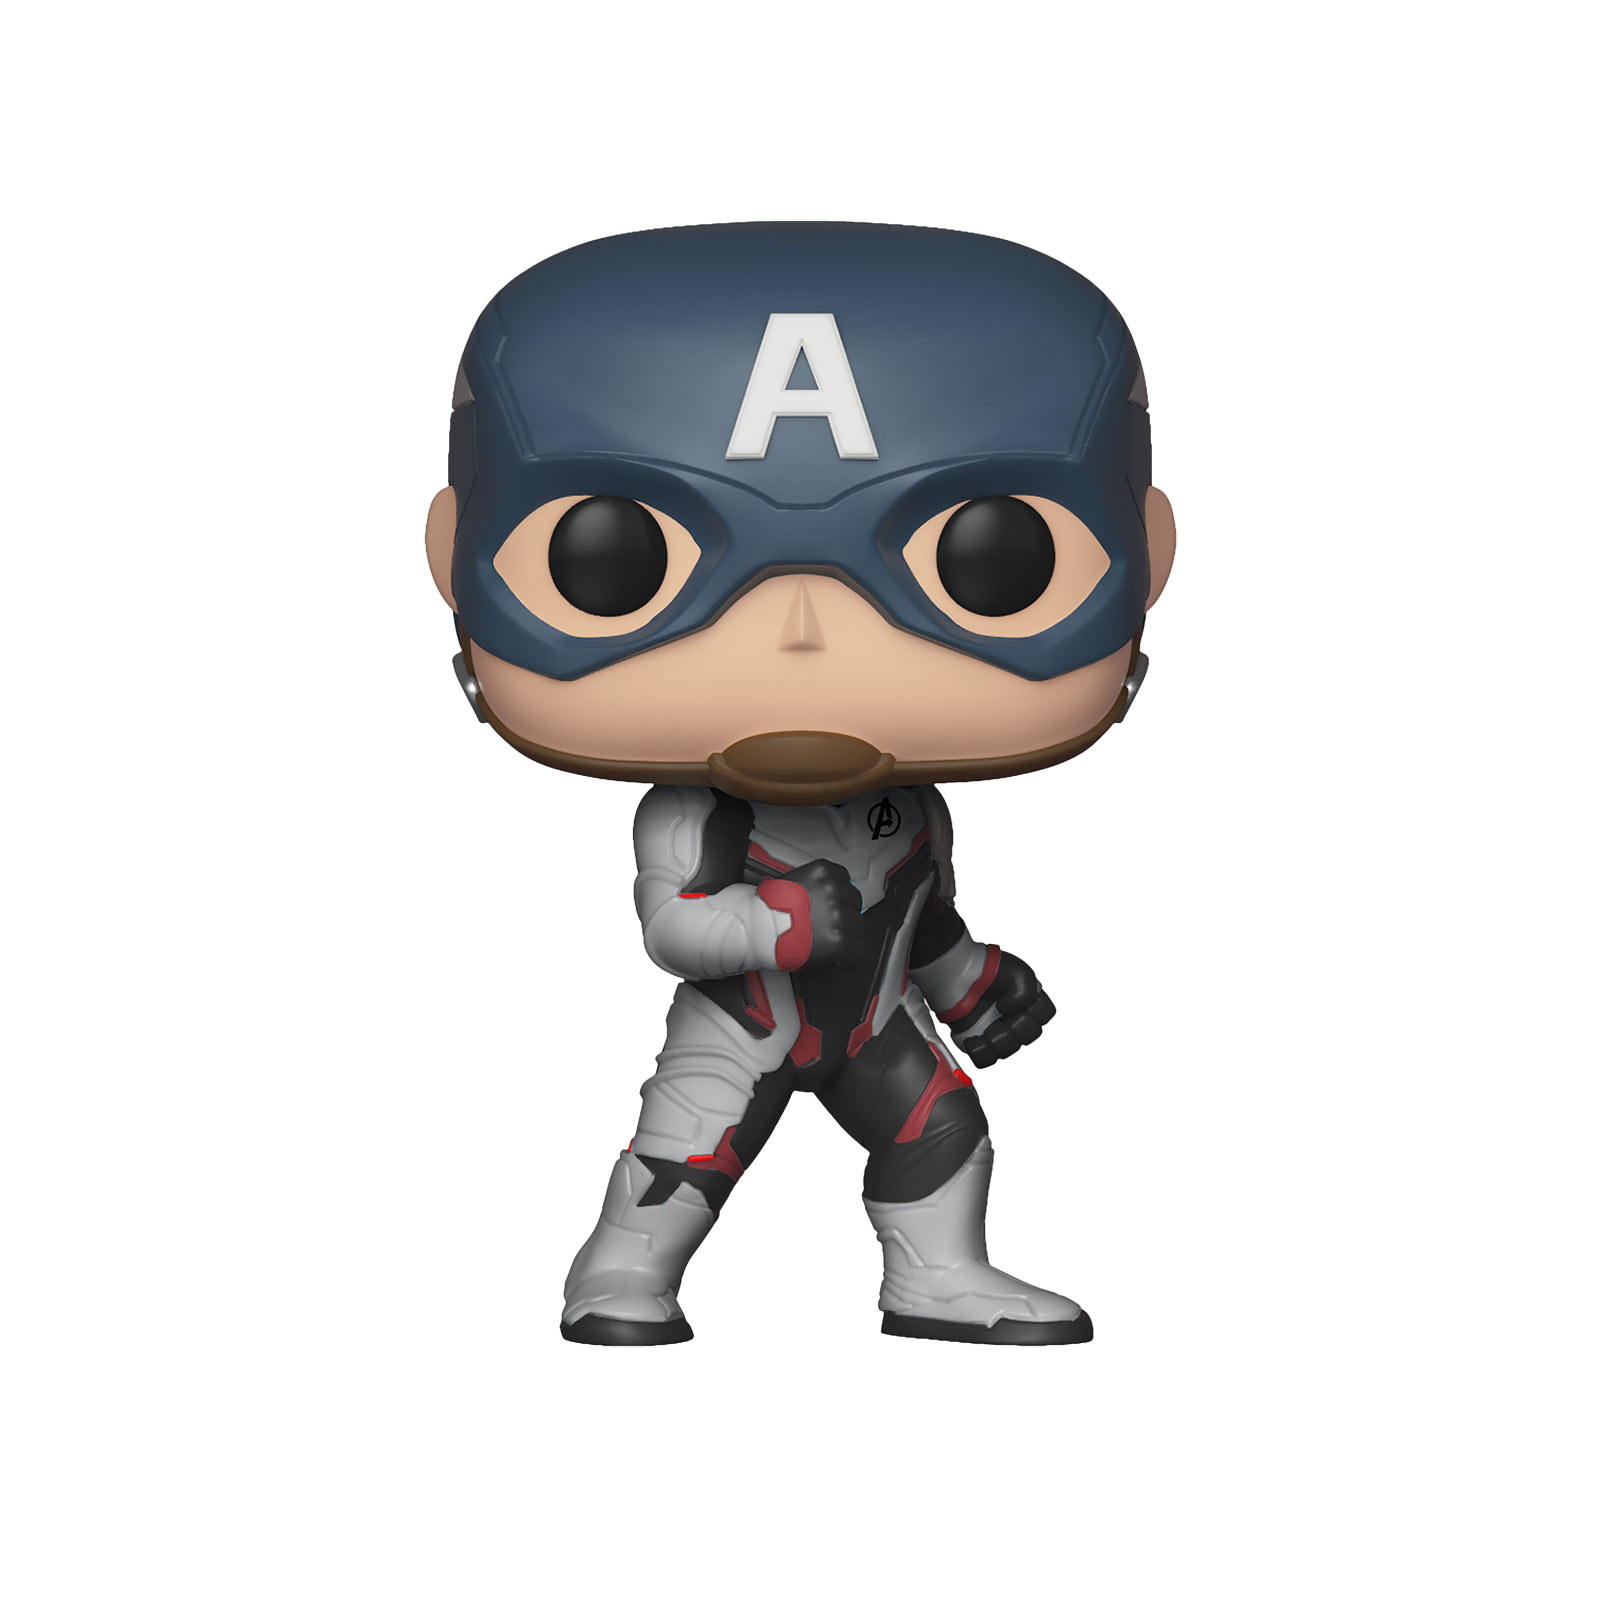 Avengers - Captain America Endgame Funko Pop bobblehead figure